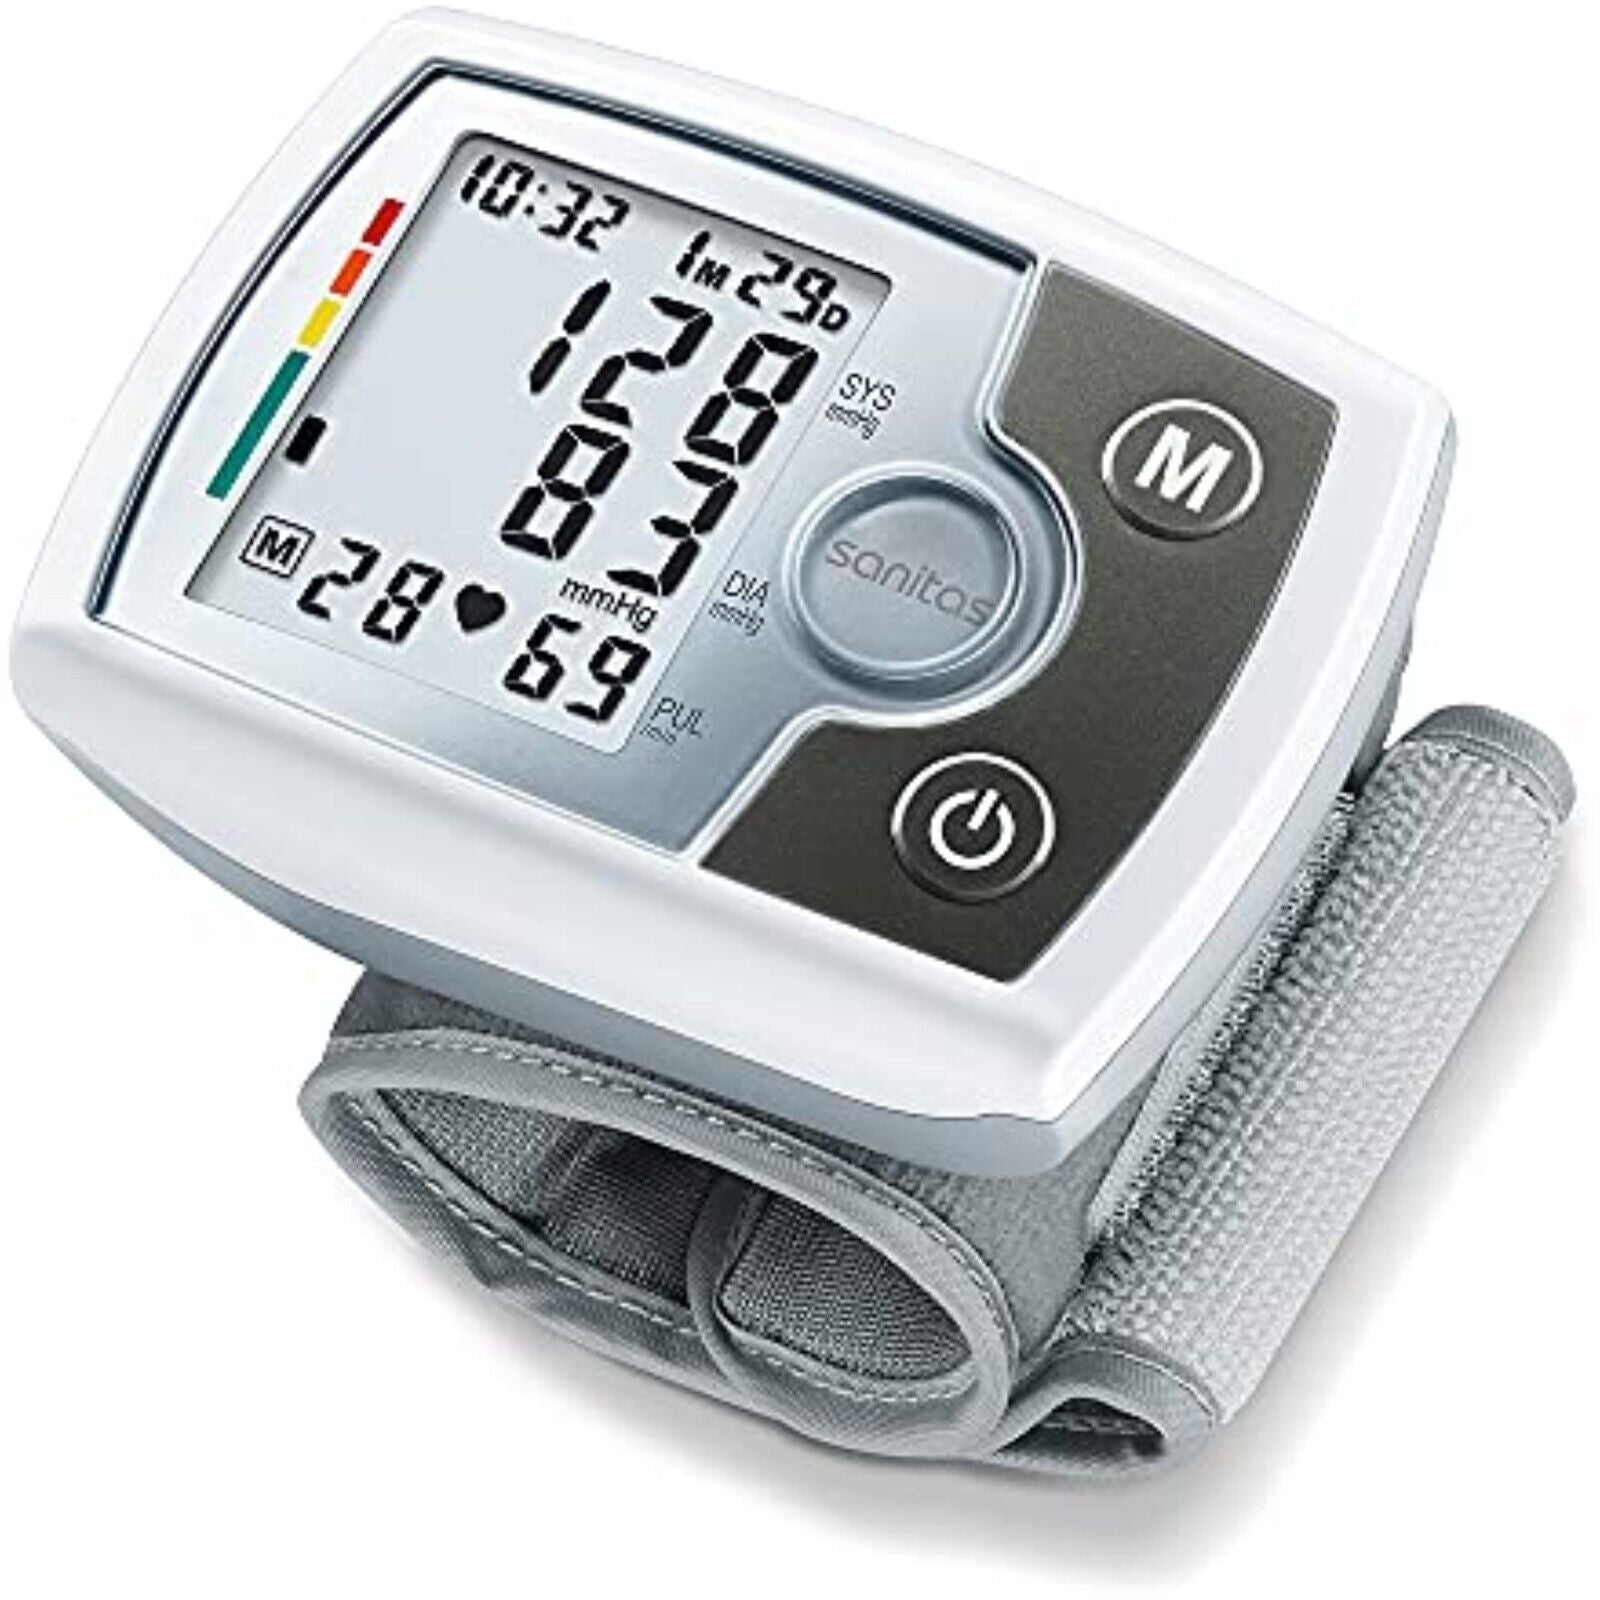 SANITAS Handgelenk Blutdruckmessgerät SBM 03 WHO Automatische Pulsmessung